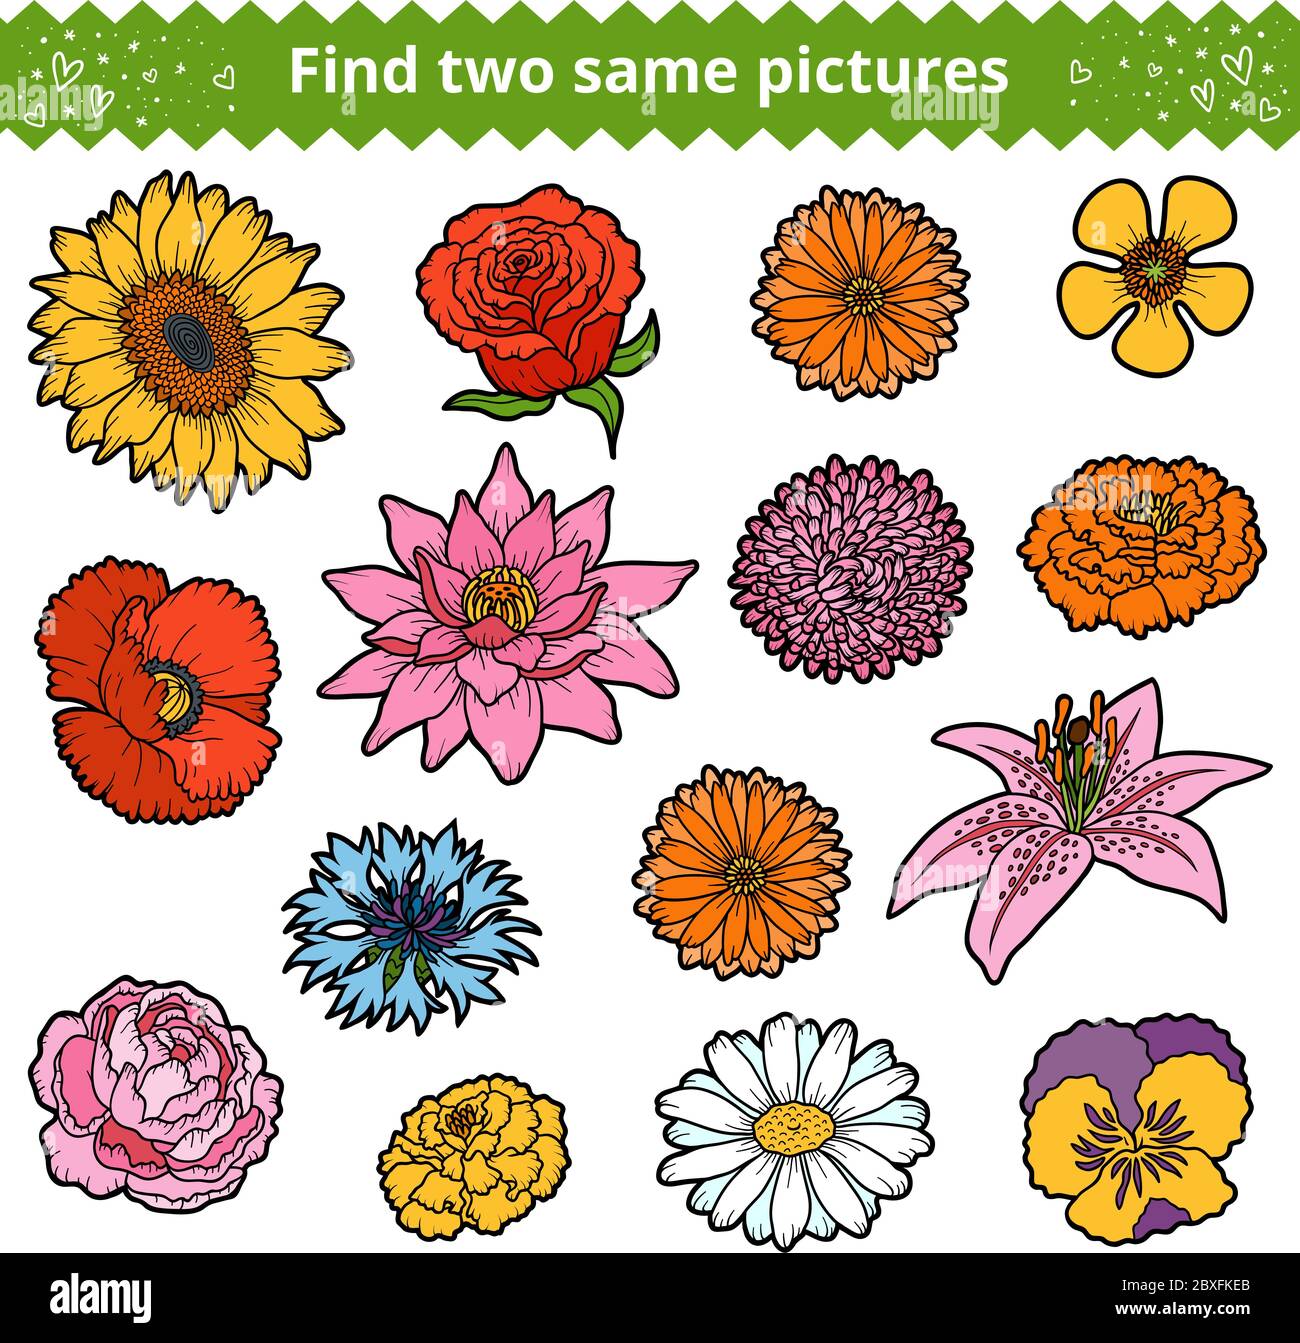 Finden Sie zwei die gleichen Bilder, Bildung Spiel für Kinder. Farbset von Blumen Stock Vektor